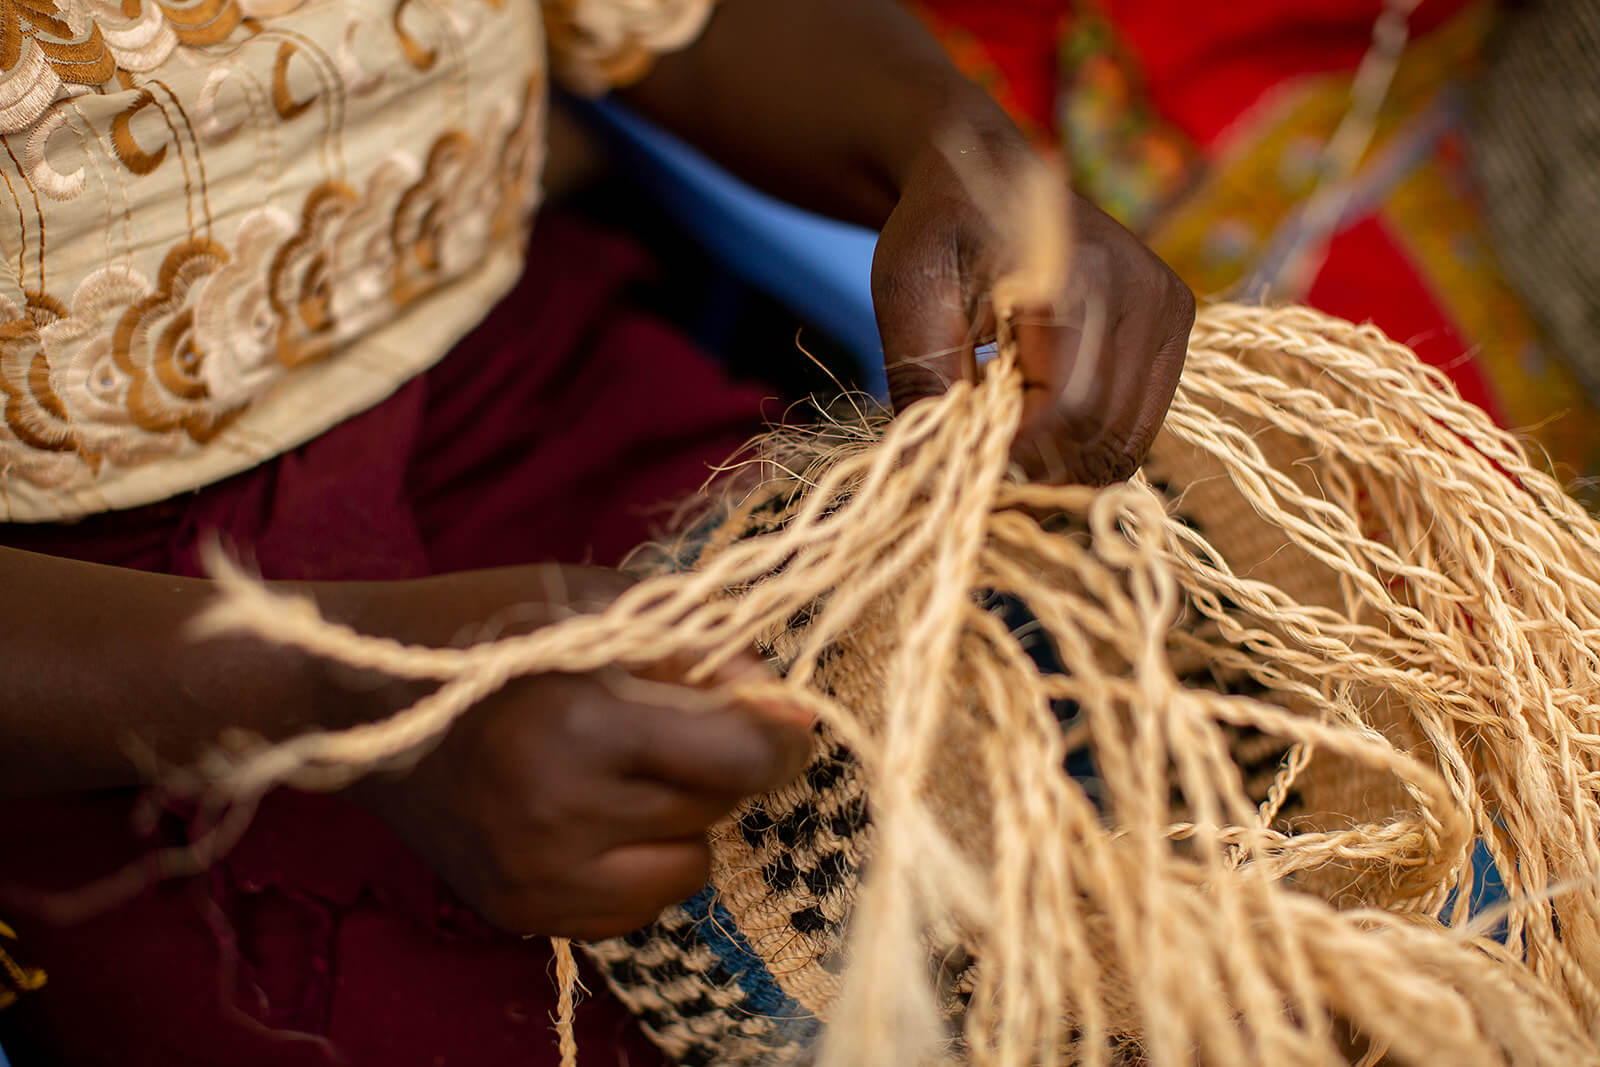 Basket weavers of Kitui